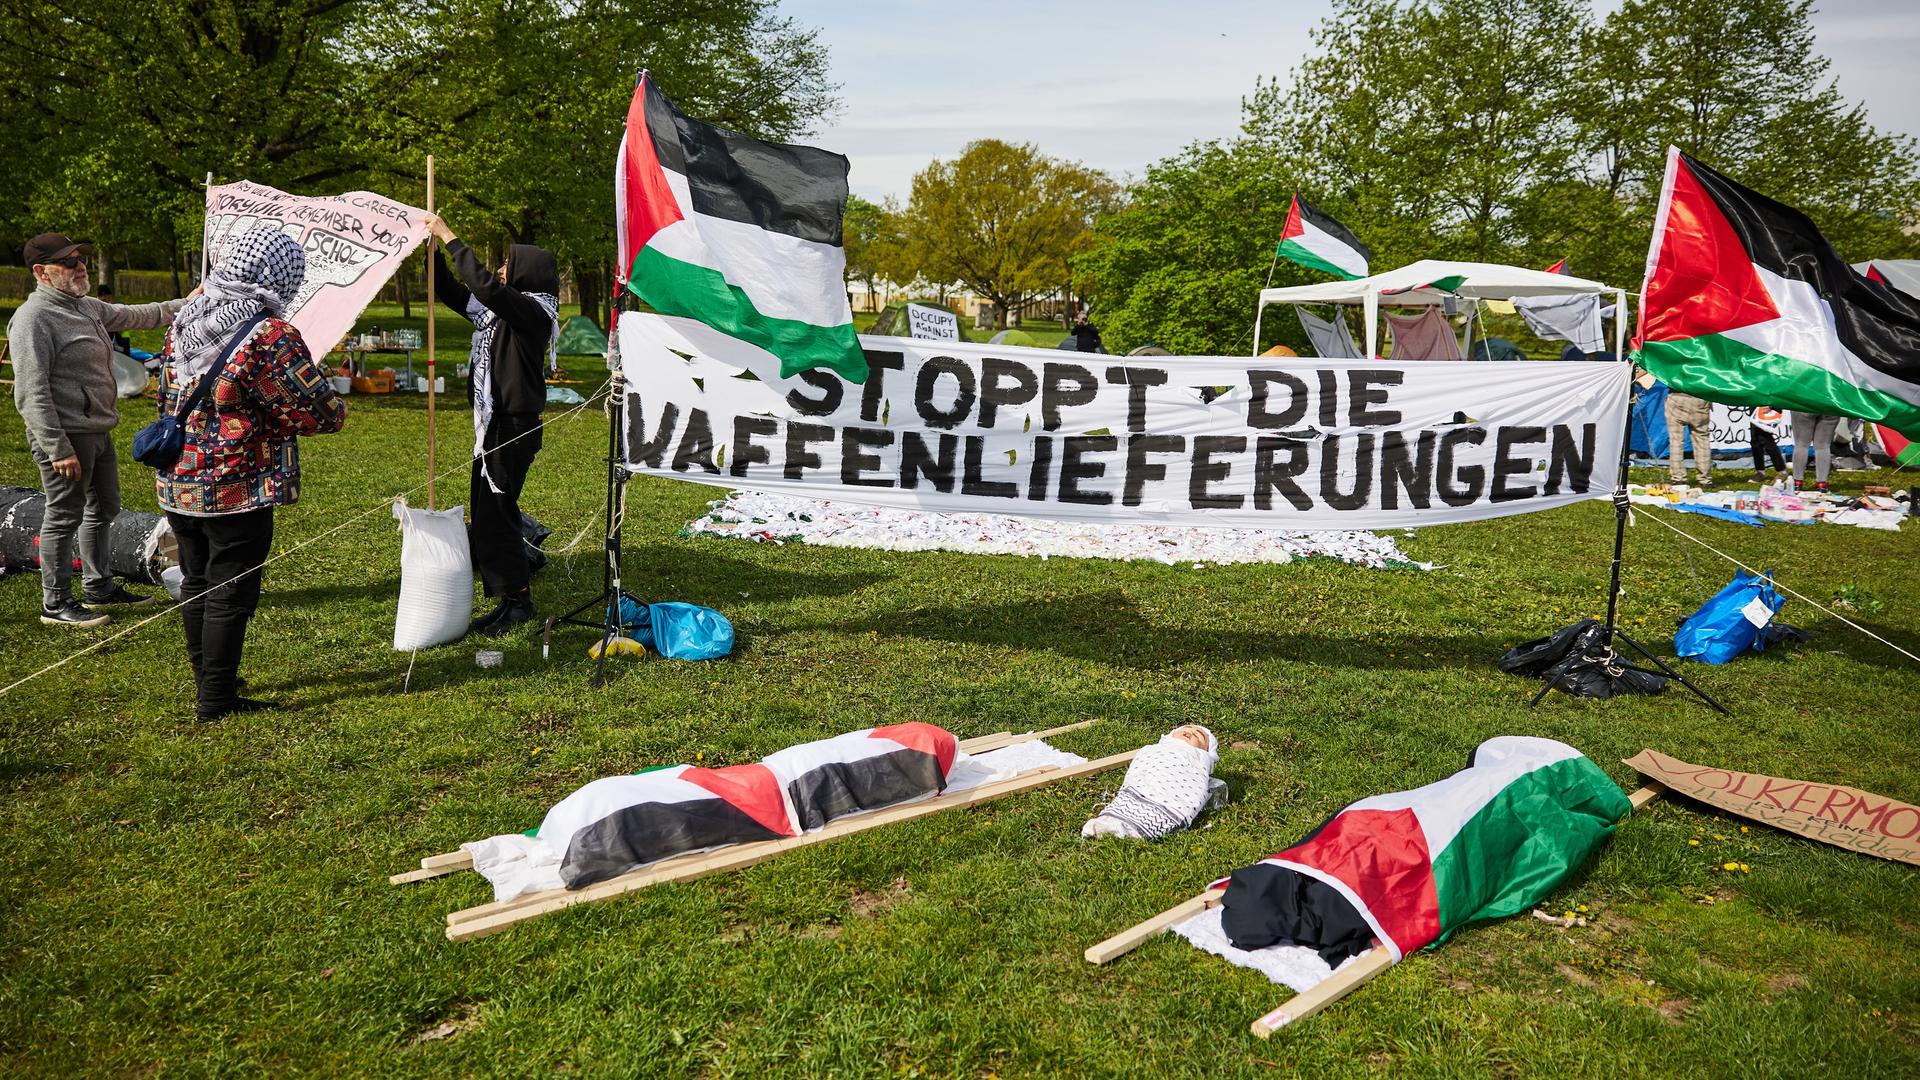 Auf der Wiese vor dem Reichstagsgebäude sieht man ein Banner mit der Aufschrift "Stoppt die Waffenlieferungen". Daneben sind zwei palästinenische Fahnen und zwei Toten-Bahren, die mit palästinensischen Fahnen umwickelt sind.